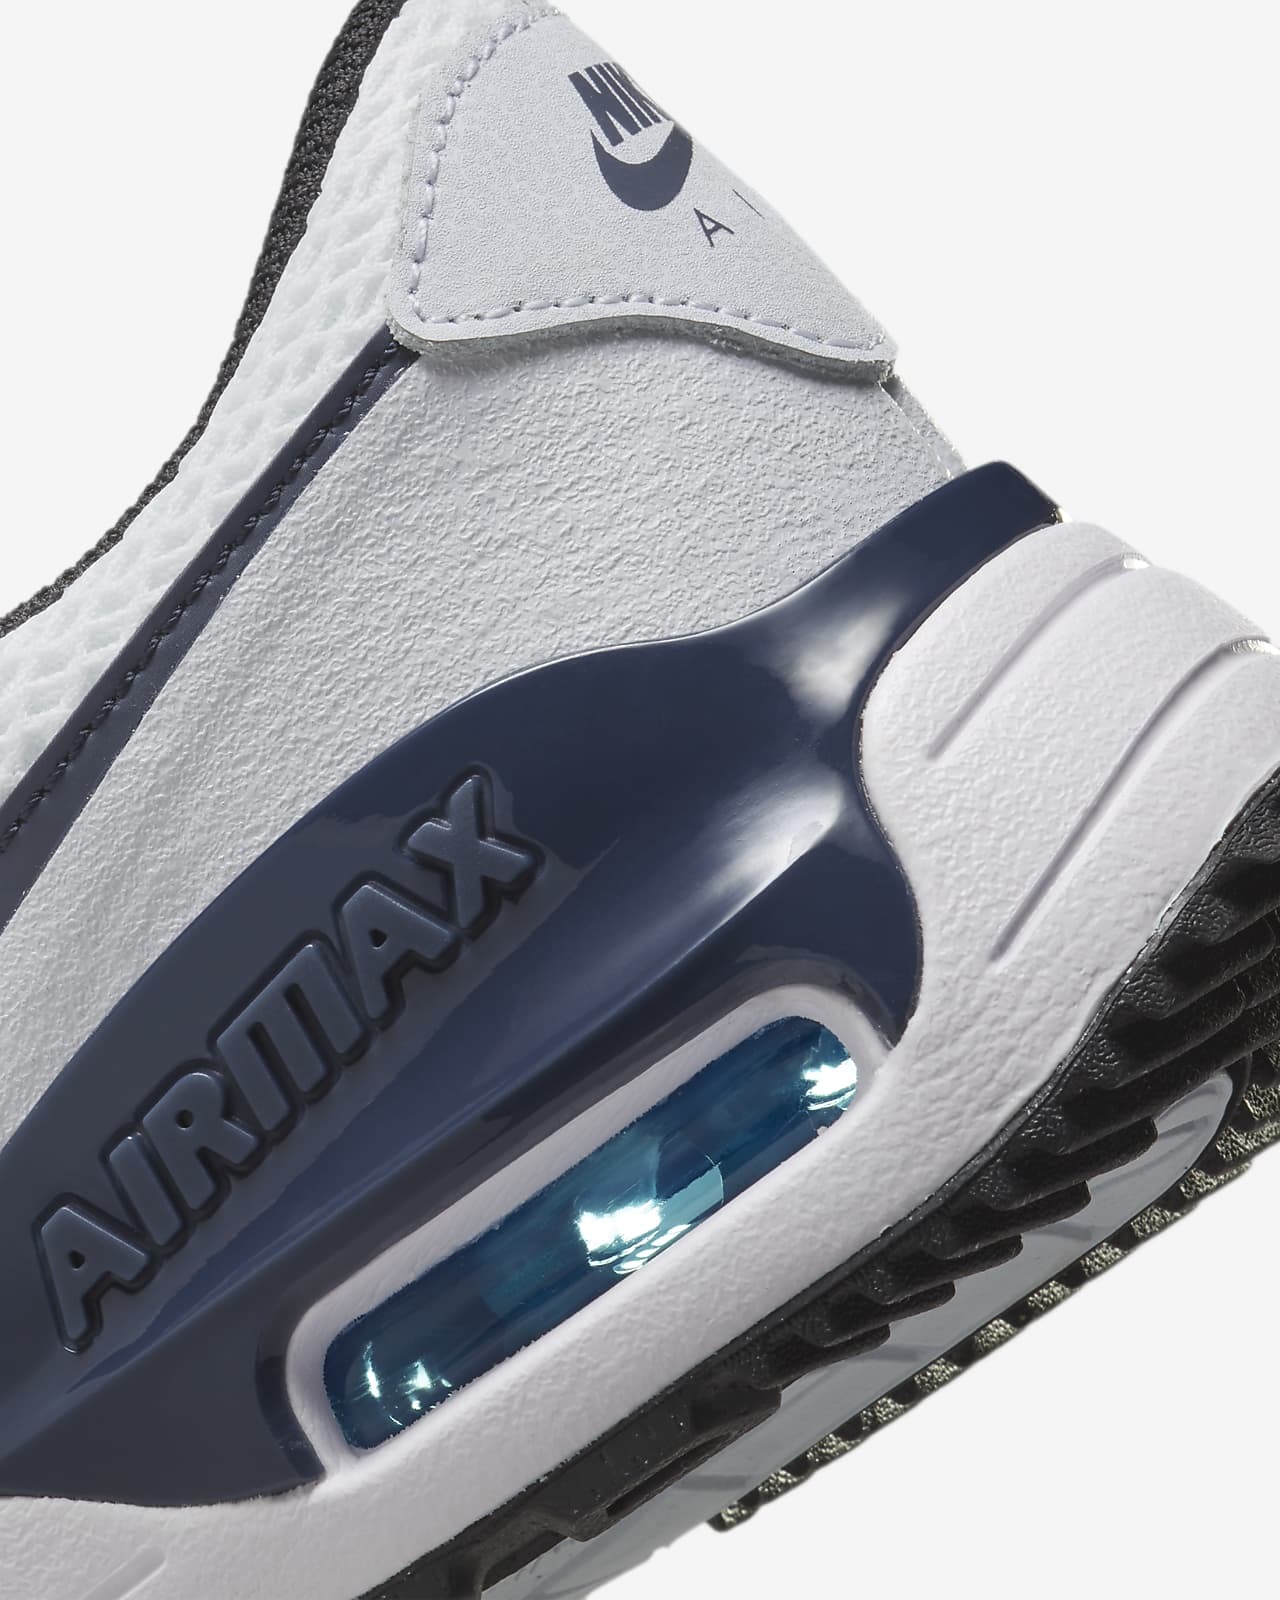 Chaussure Nike garçon AIR MAX SYSTM blanc/marine